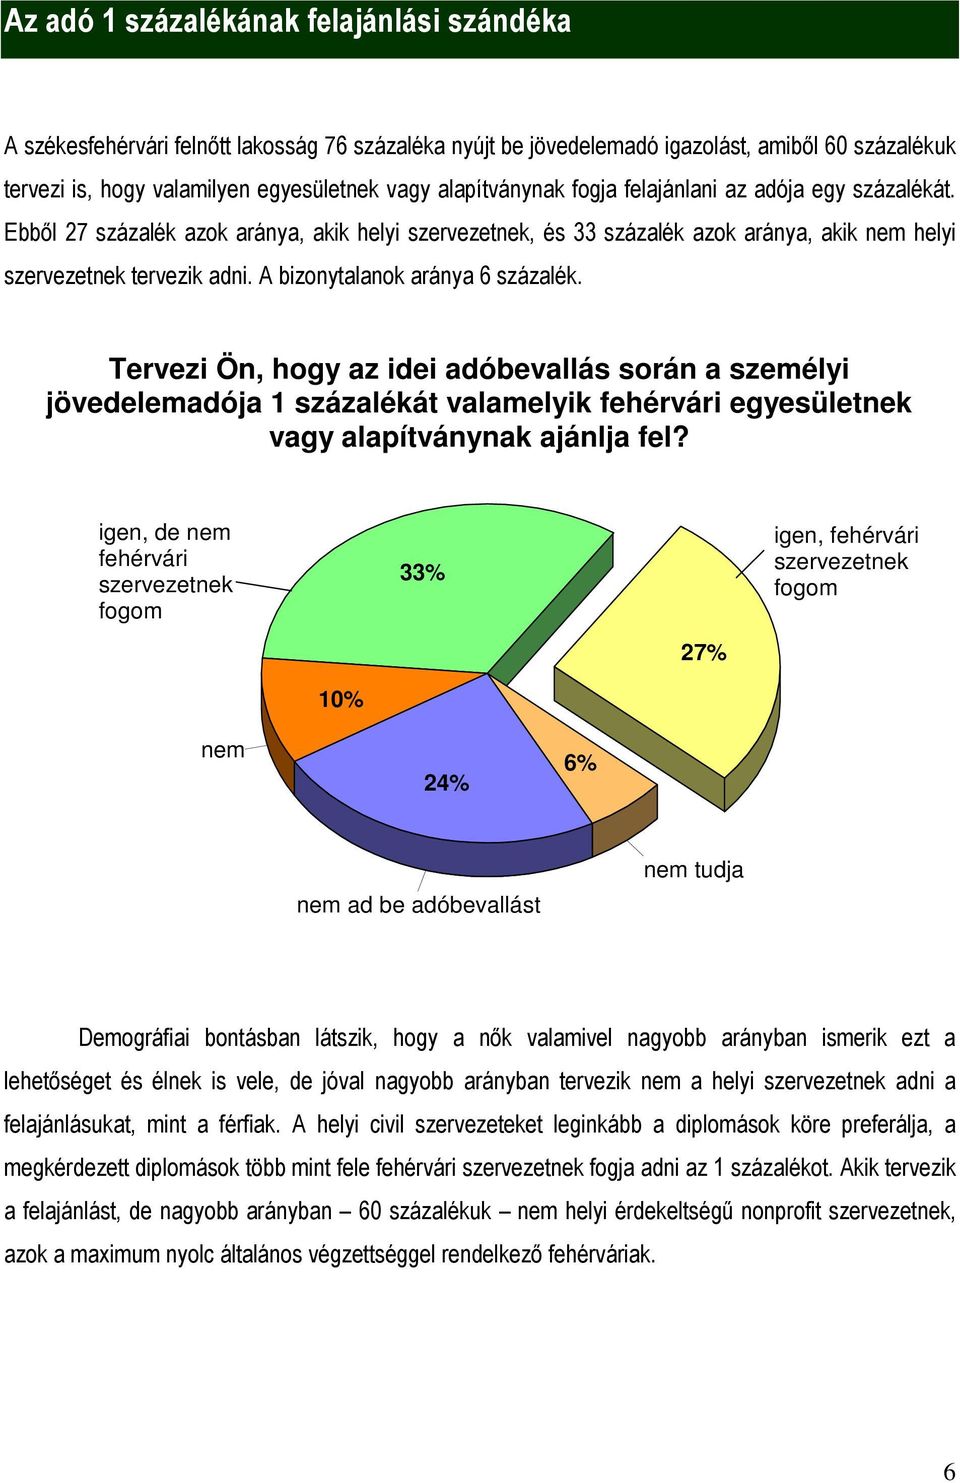 A bizonytalanok aránya 6 százalék. Tervezi Ön, hogy az idei adóbevallás során a személyi jövedelemadója 1 százalékát valamelyik fehérvári egyesületnek vagy alapítványnak ajánlja fel?